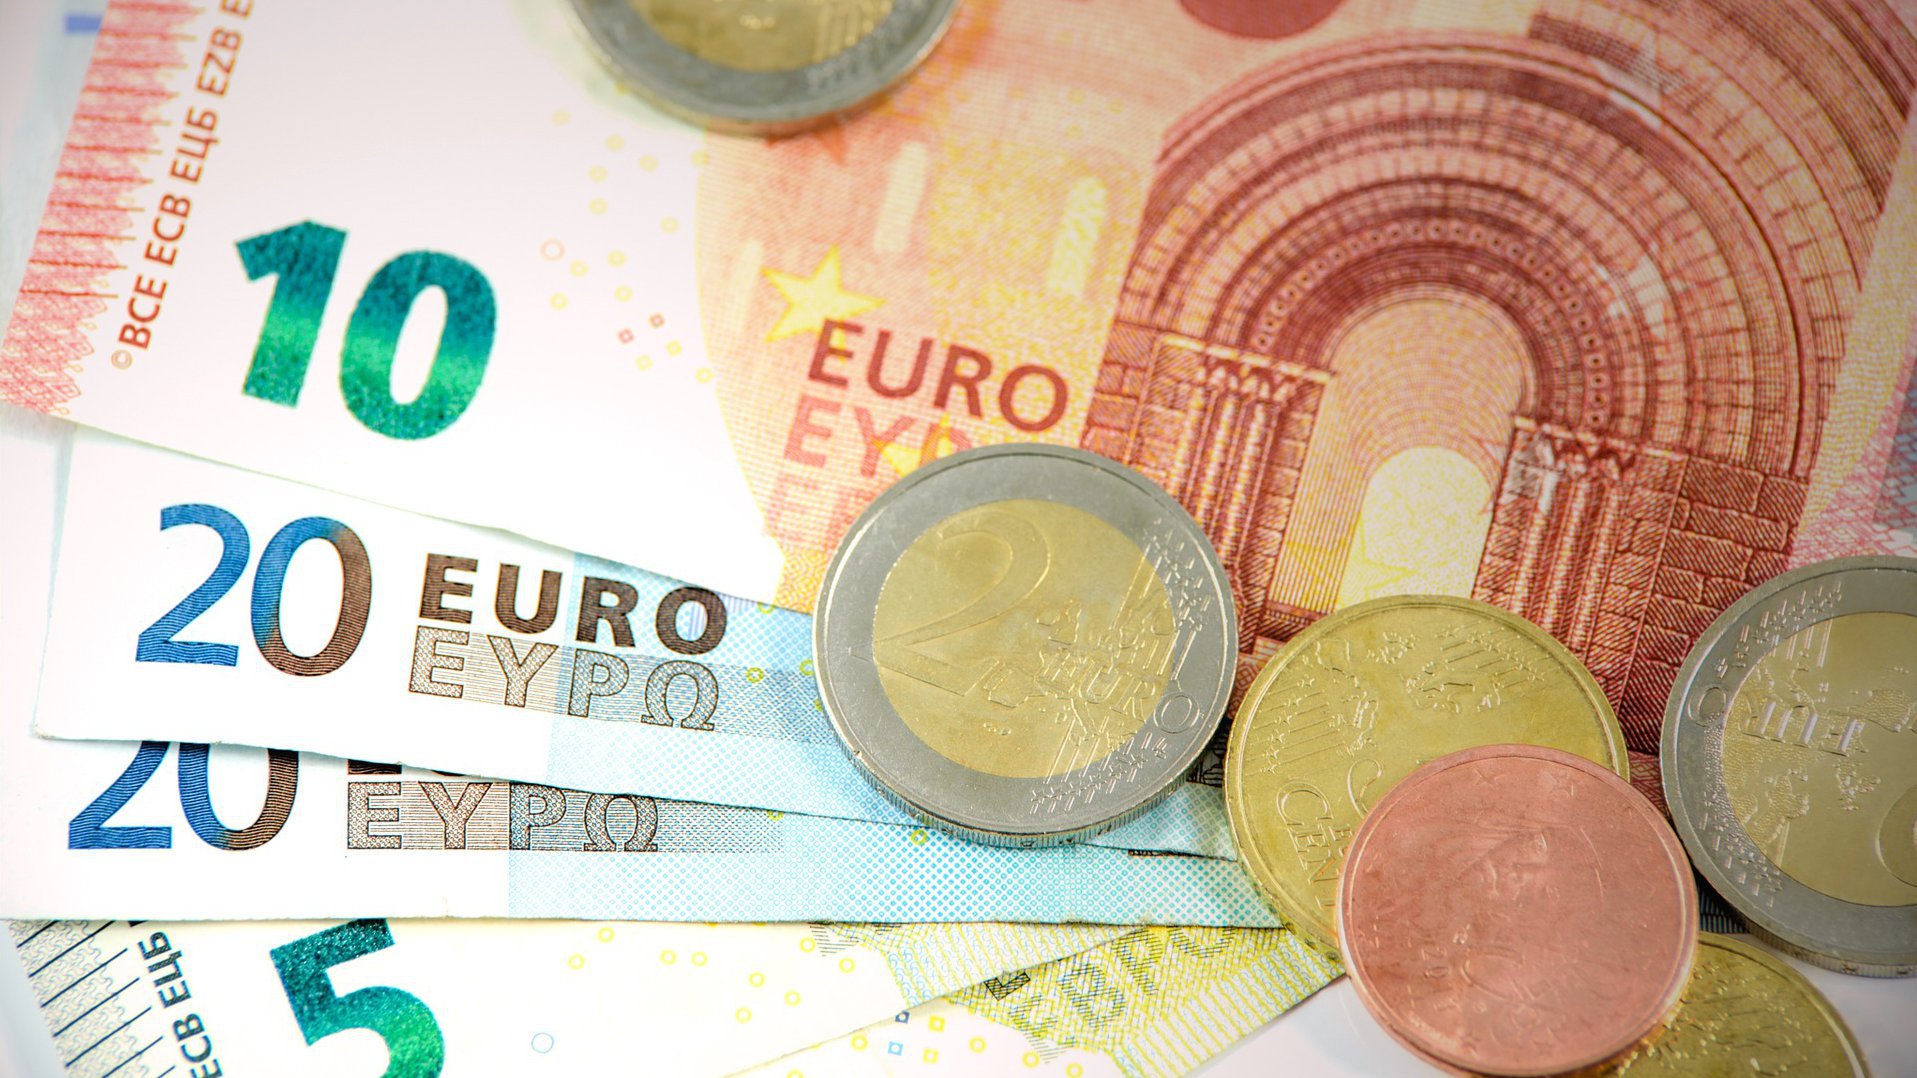 Geldscheine liegen aufgefächert auf einer Fläche und zwei Euro-Münzen liegen drauf verteilt.